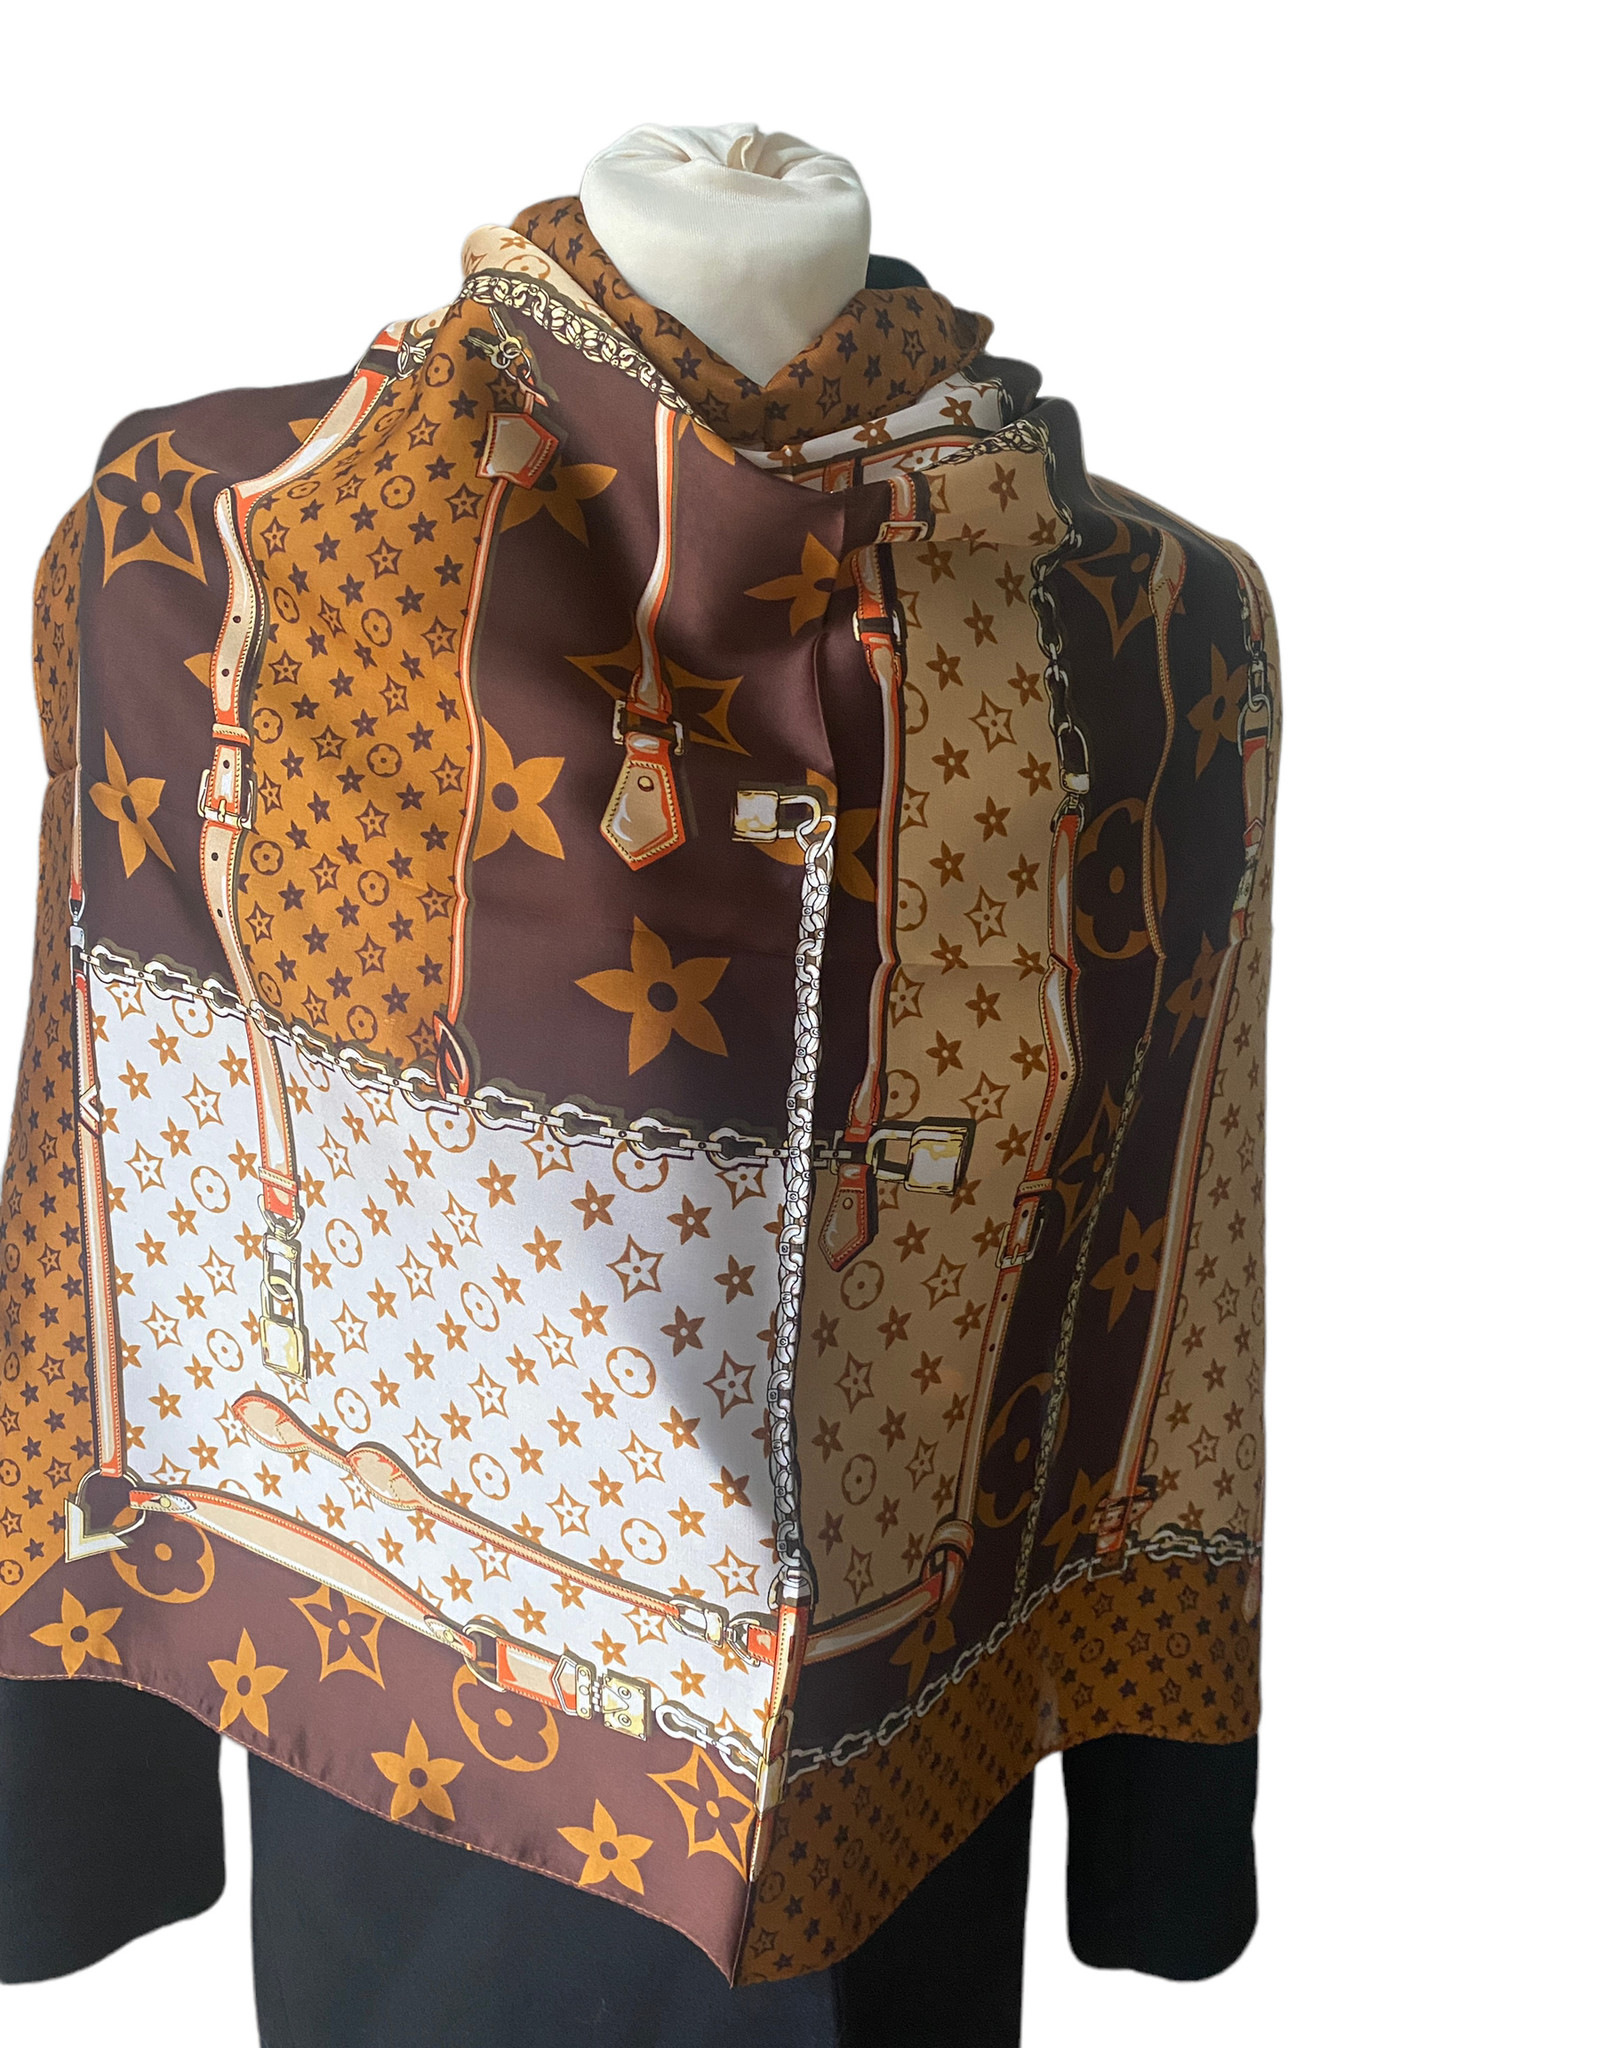 Vierkante santijnen sjaal met brand logo. Bruin/beige tinten met oranje